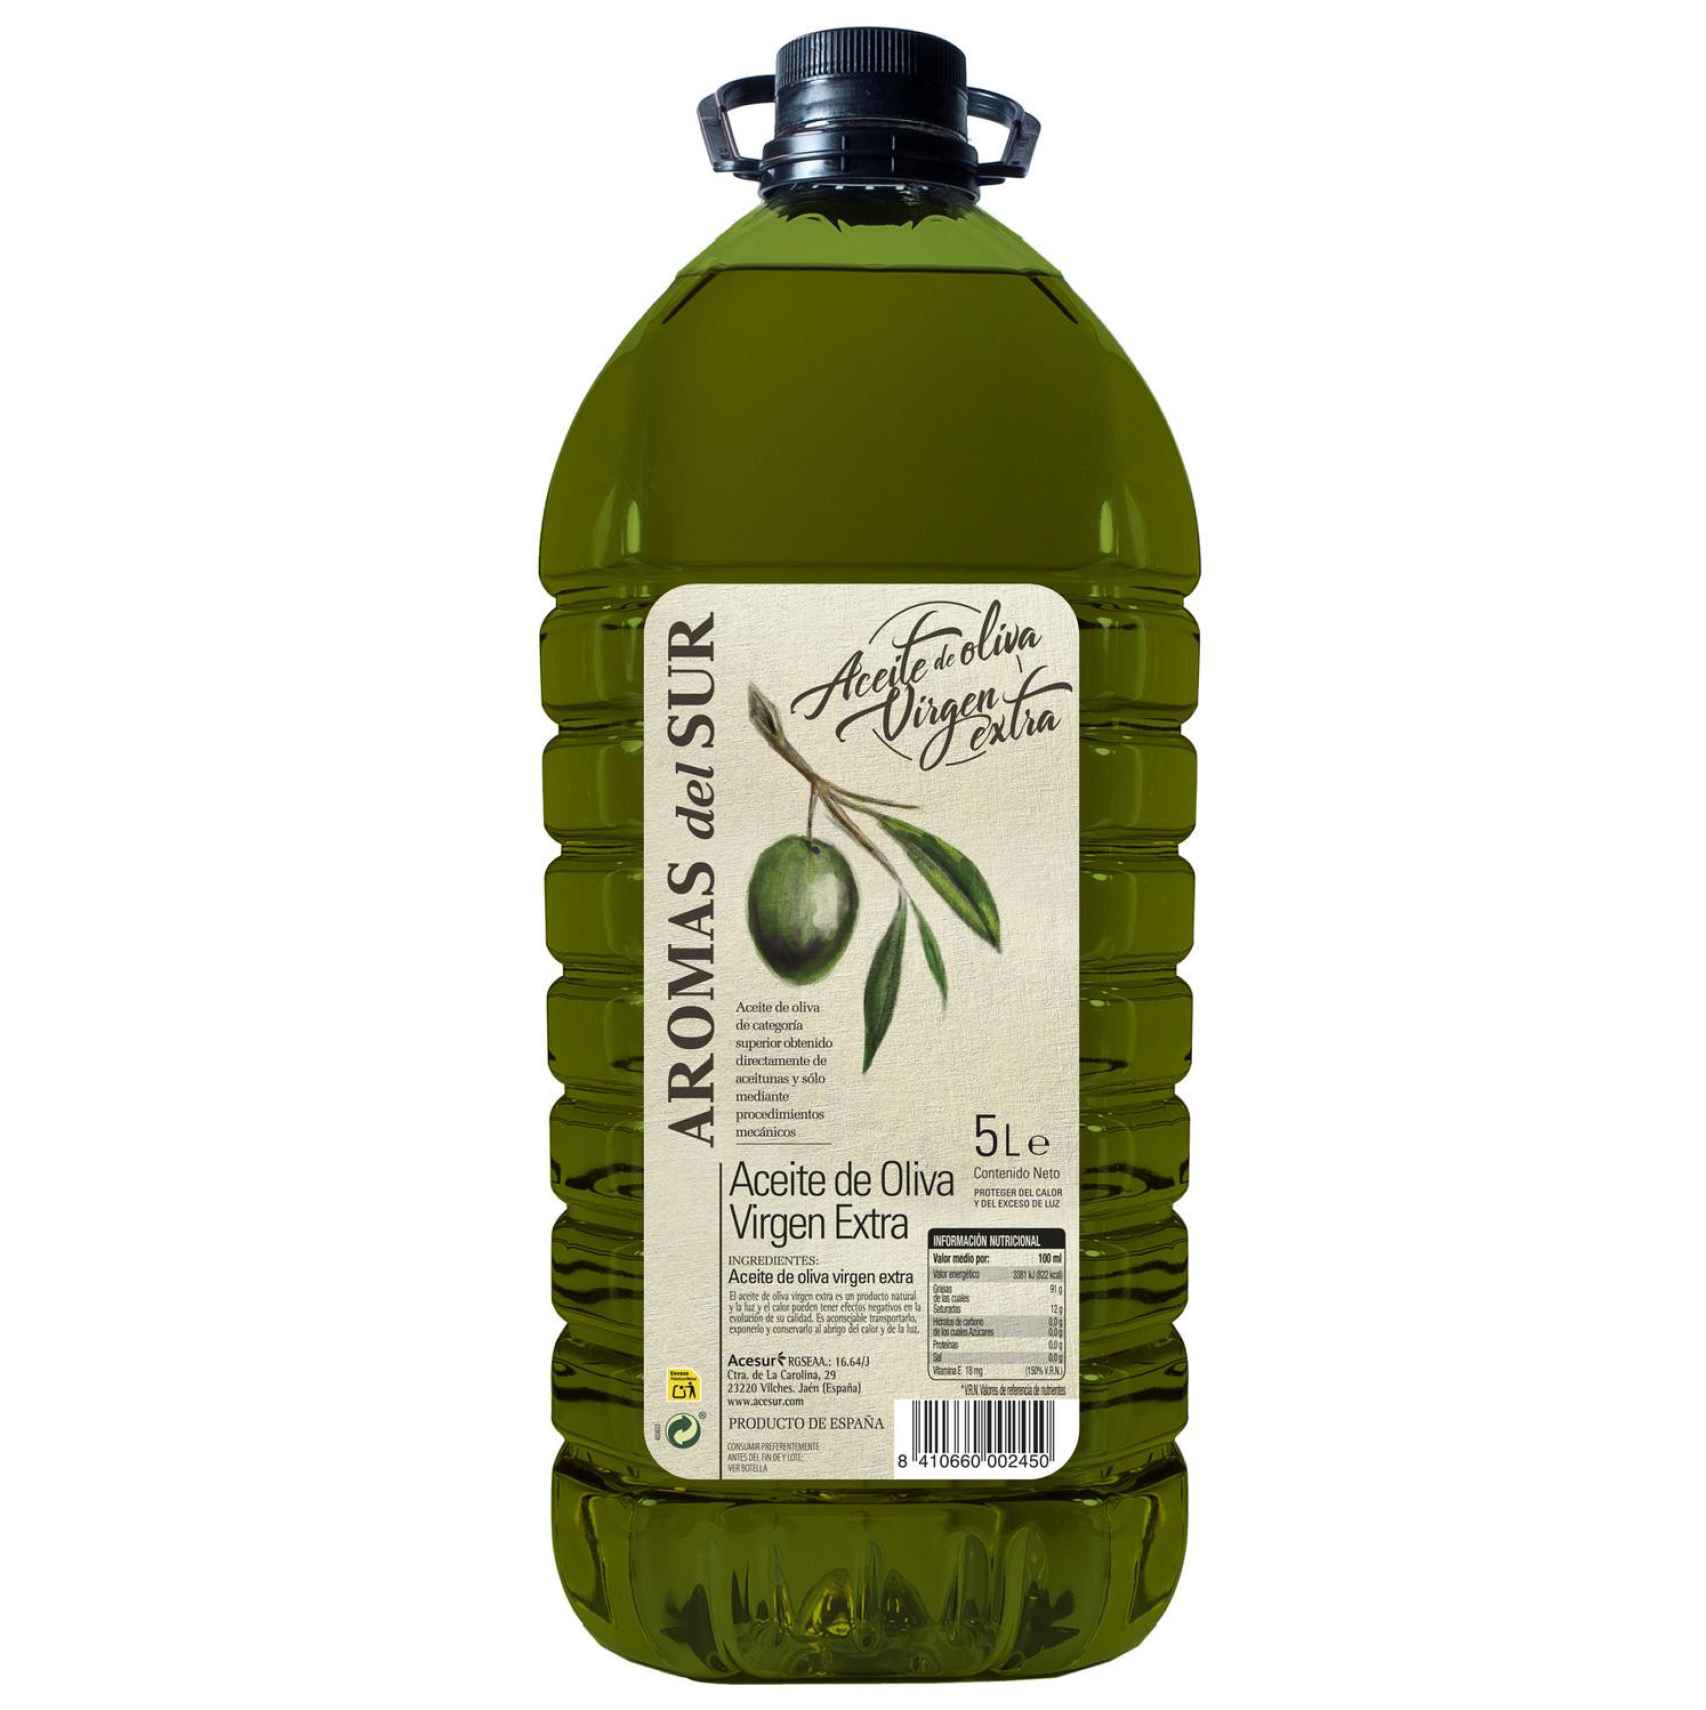 Buscamos el aceite de oliva más barato del supermercado